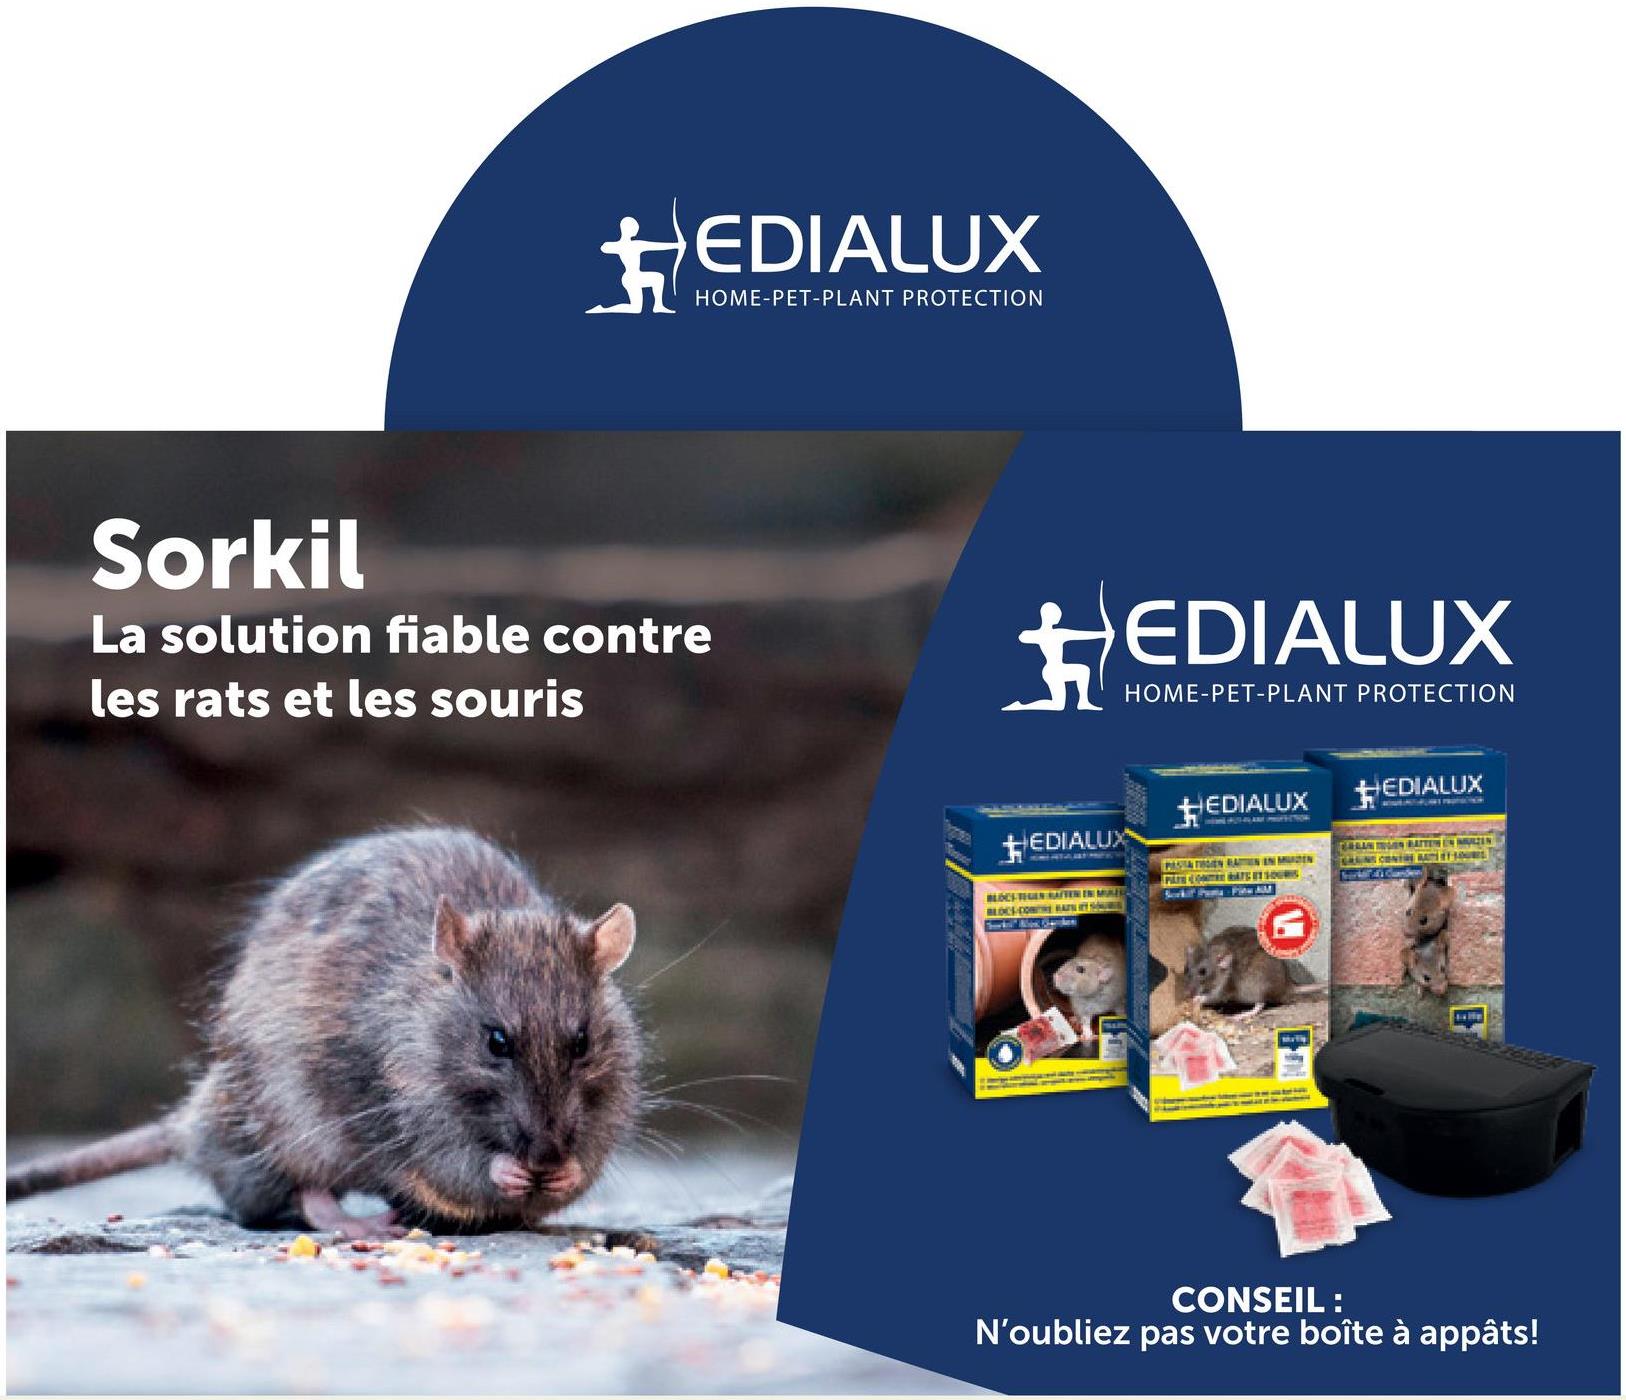 +EDIALUX
HOME-PET-PLANT PROTECTION
Sorkil
La solution fiable contre
les rats et les souris
EDIALUX
HOME-PET-PLANT PROTECTION
EDIALUX
HEDIALUX
EDIALUX
BLOCS TEEN RAFTEN IN MULE
BLOCS-COM BATELITY SHURE
PASTA THEN RAIN IN MEN
PATE COATE ET SOURIS
Scrkit Puma - Pieu AM
G
CRANTON BATTEN EN MUZEN
GRAINS CONTRE RATE ET SOURES
CONSEIL :
N'oubliez pas votre boîte à appâts!